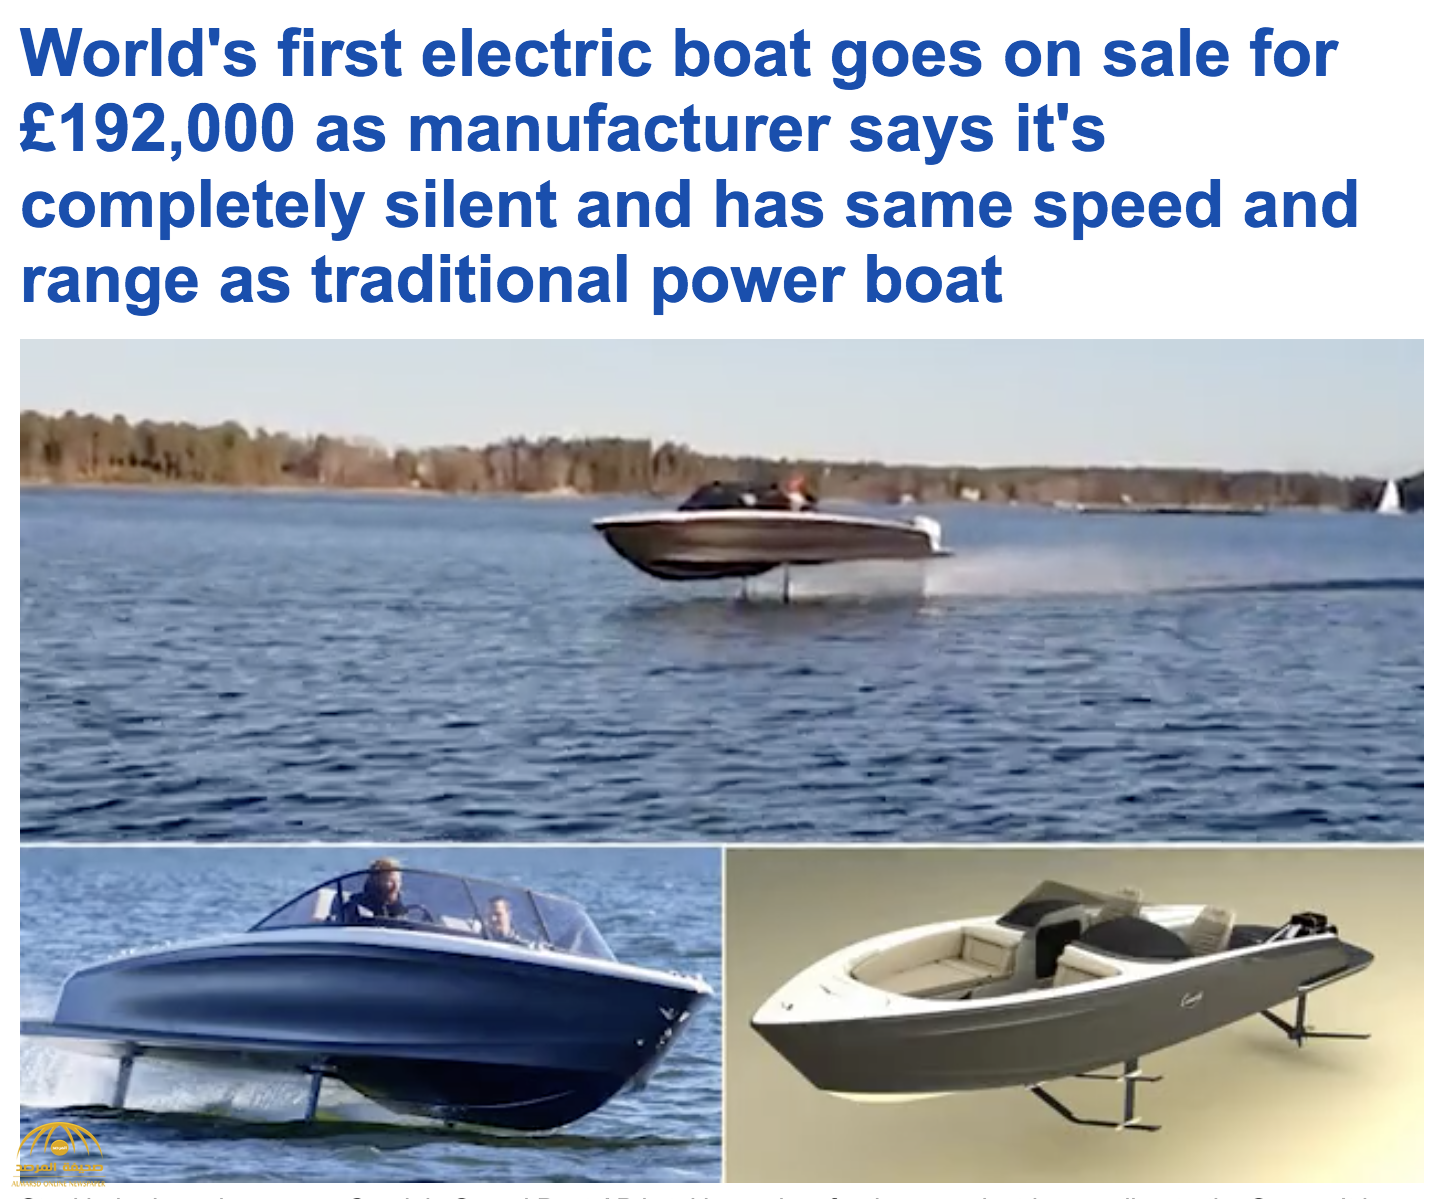 شاهد: طرح أول قارب سريع يعمل بالكهرباء في العالم بتقنية سويدية متميزة - فيديو